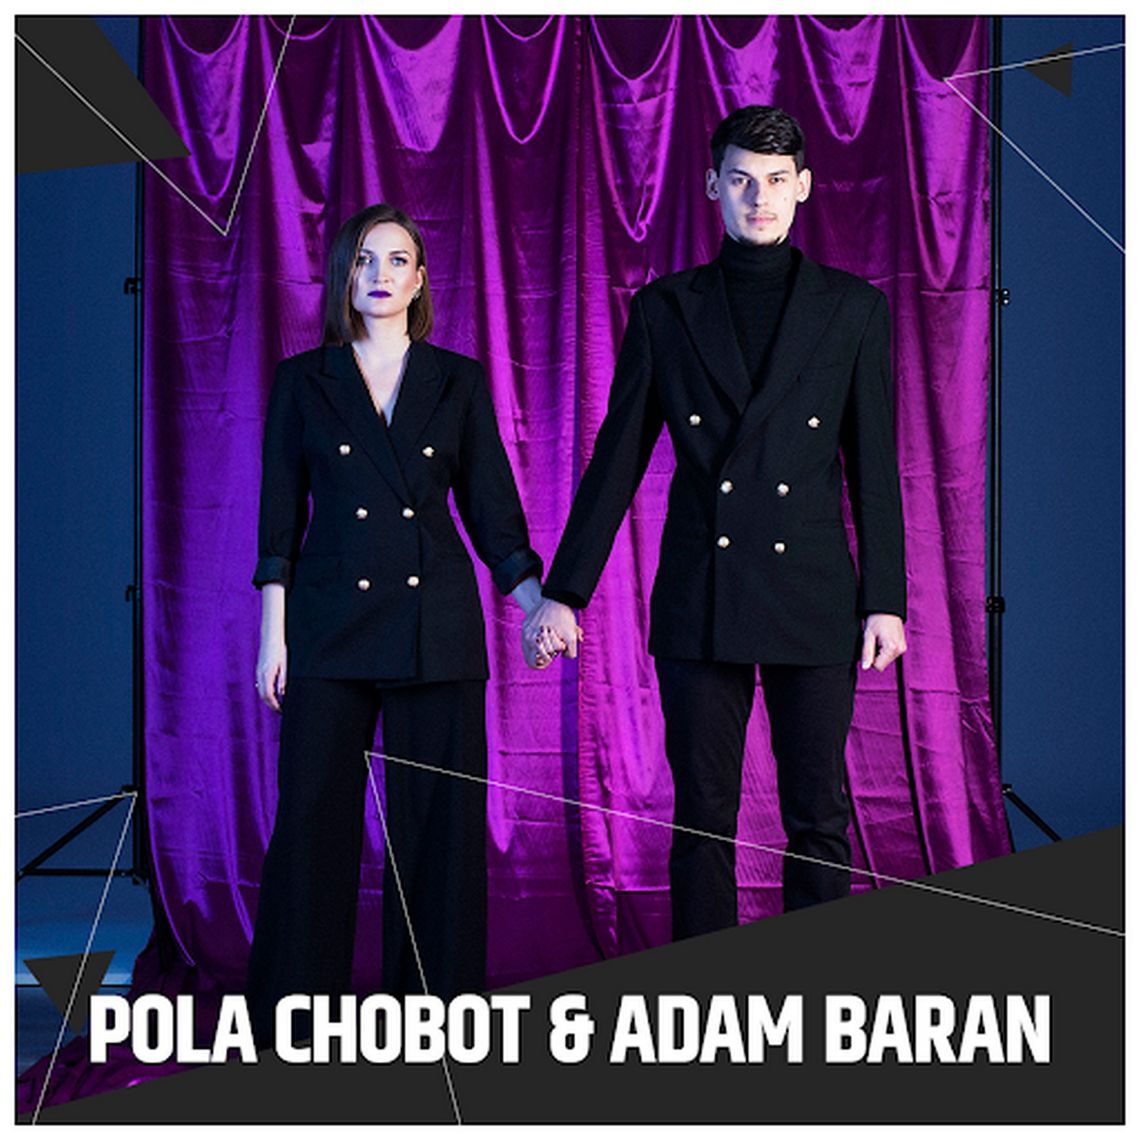  CEL: MUZYCZNIE LIVE: Pola Chobot & Adam Baran - koncert bluesowy live /7 kwietnia 2020